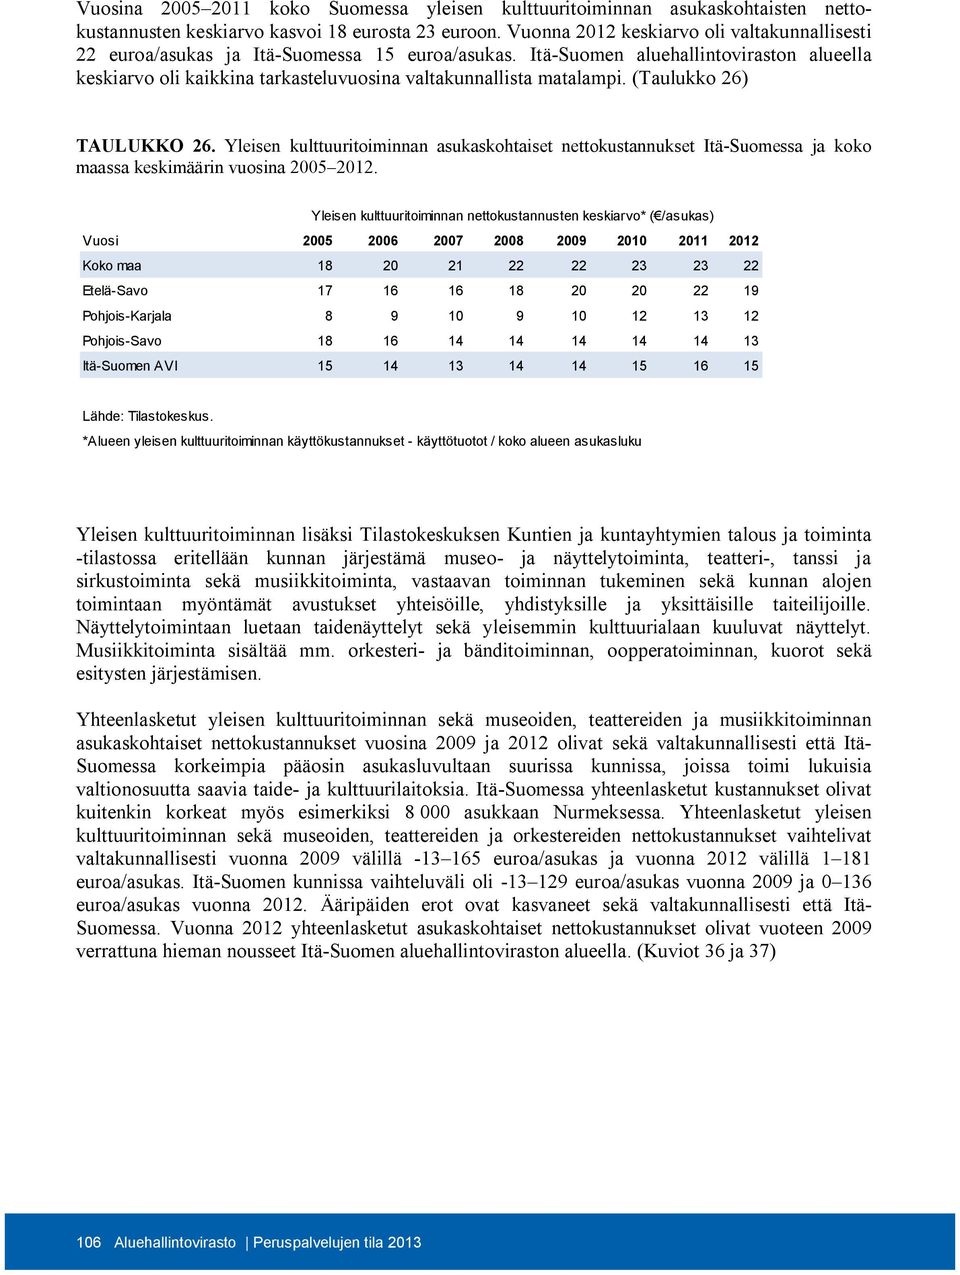 Itä-Suomen aluehallintoviraston alueella keskiarvo oli kaikkina tarkasteluvuosina valtakunnallista matalampi. (Taulukko 26) TAULUKKO 26.